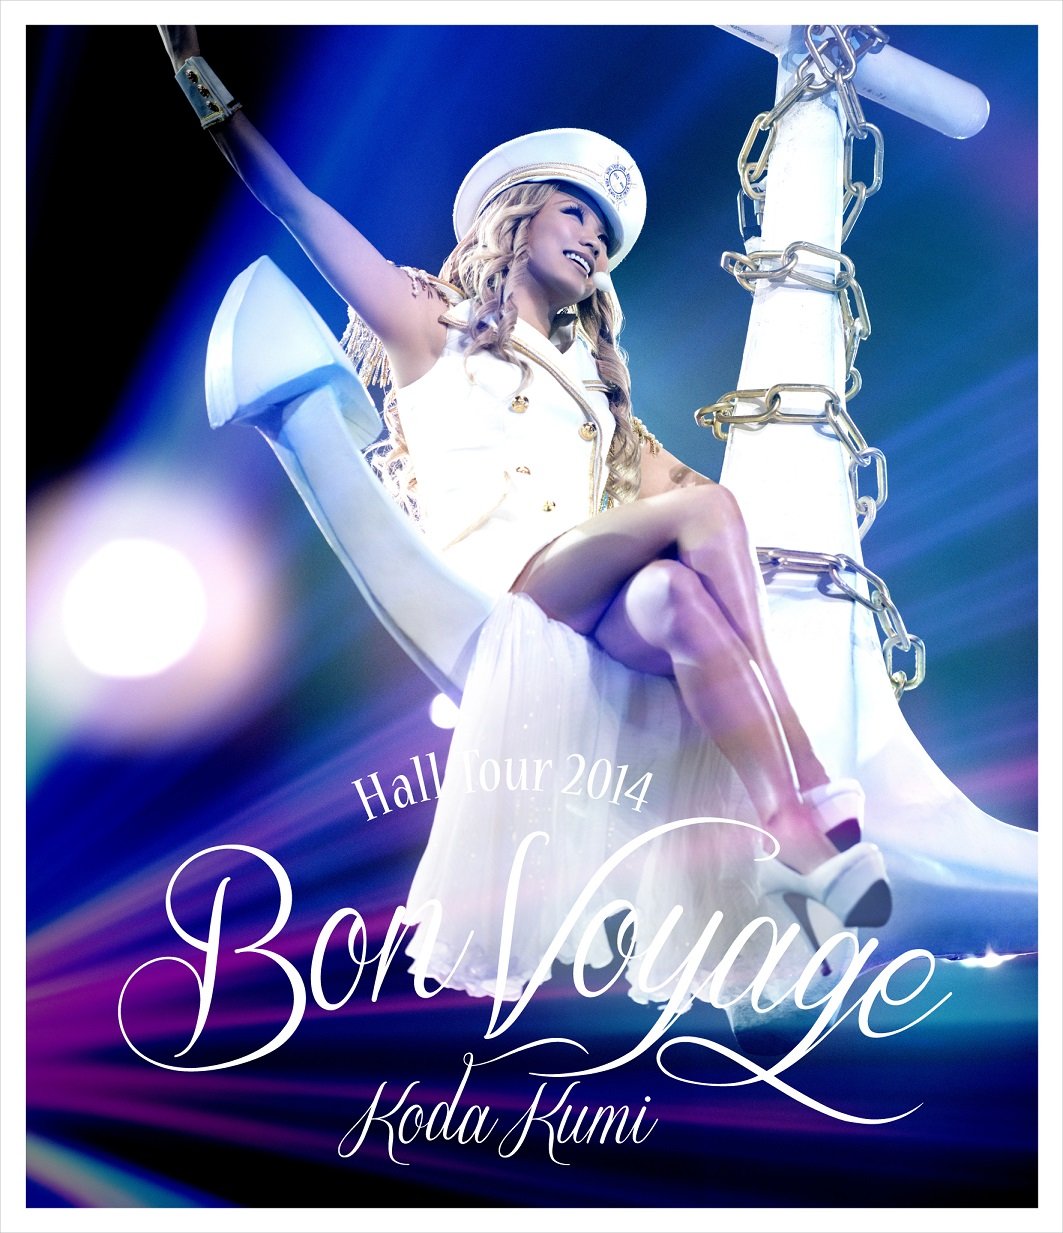 倖田來未 (Koda Kumi) - Koda Kumi Hall Tour 2014 ~Bon Voyage~ (2014) [Blu-ray ISO + MKV 1080p]